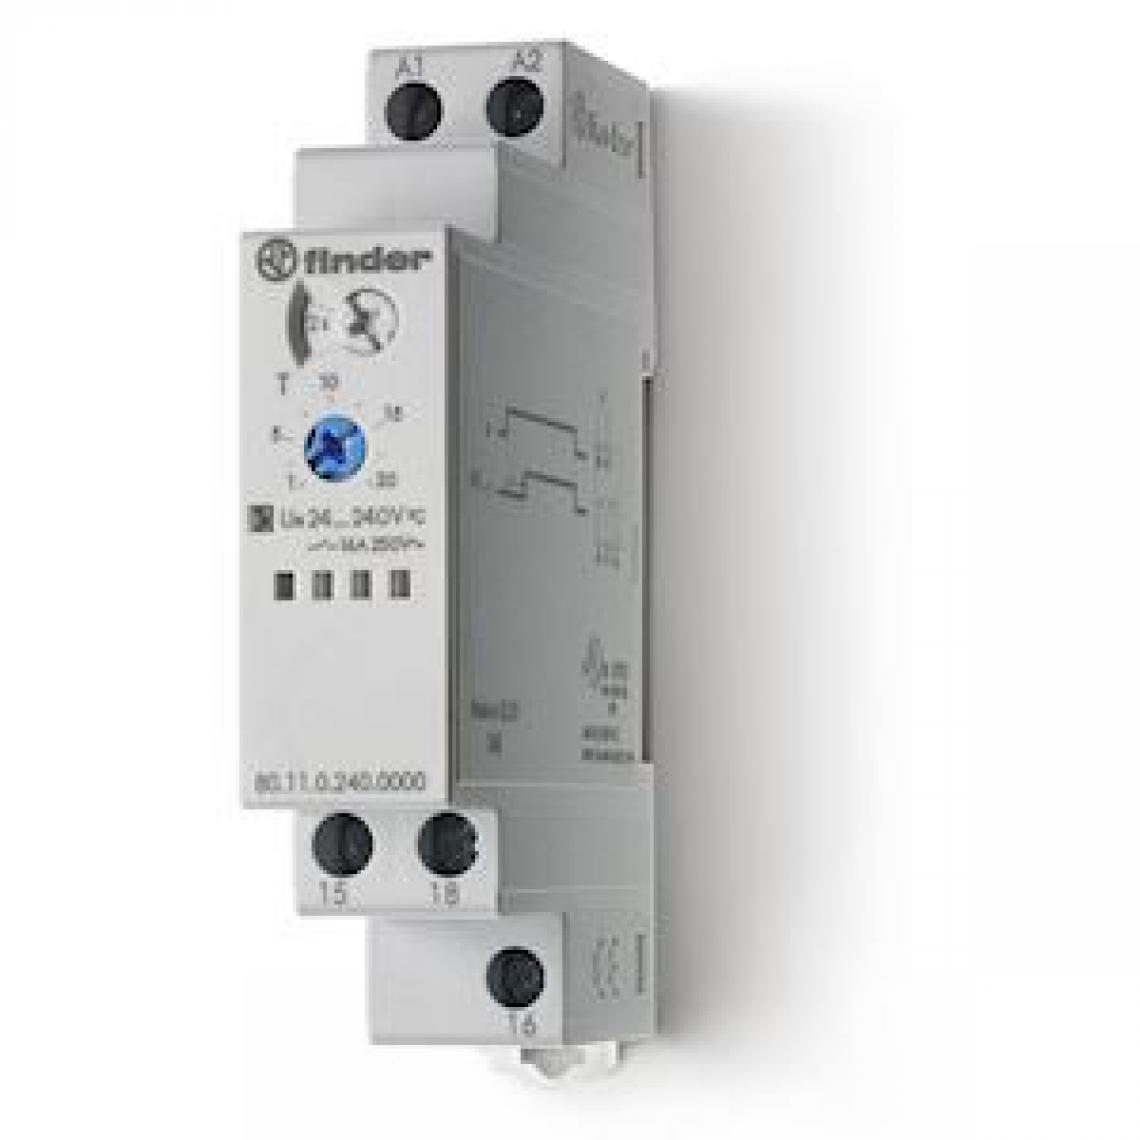 Finder - relais temporisé multifonction - modulaire - 1 contact 16a - finder 801102400000 - Télérupteurs, minuteries et horloges